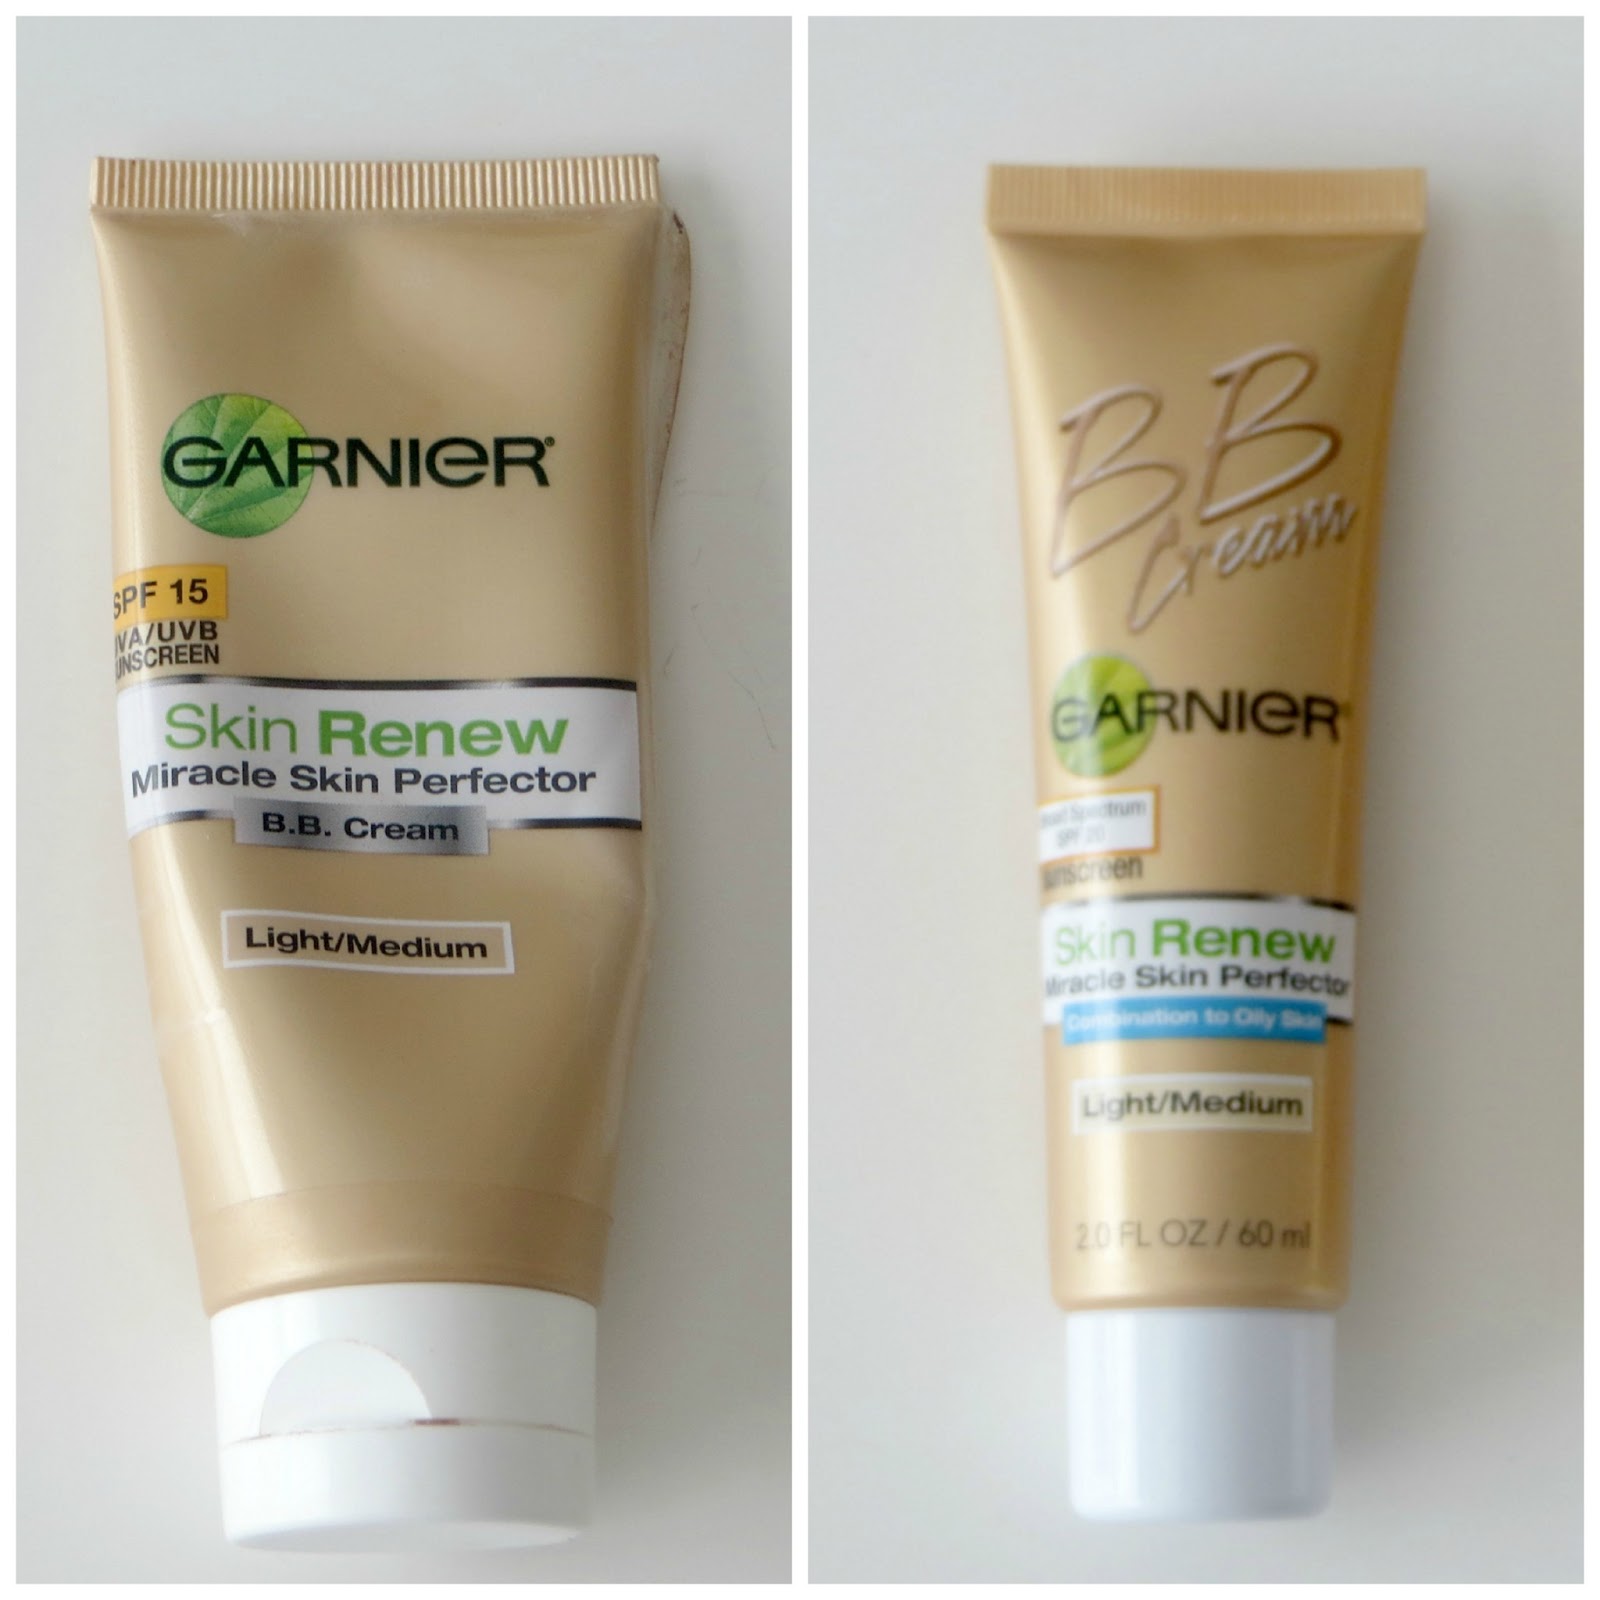 Elle Sees|| Blogger Atlanta: Product Test Drive: Garnier BB vs. Garnier BB Cream For Skin